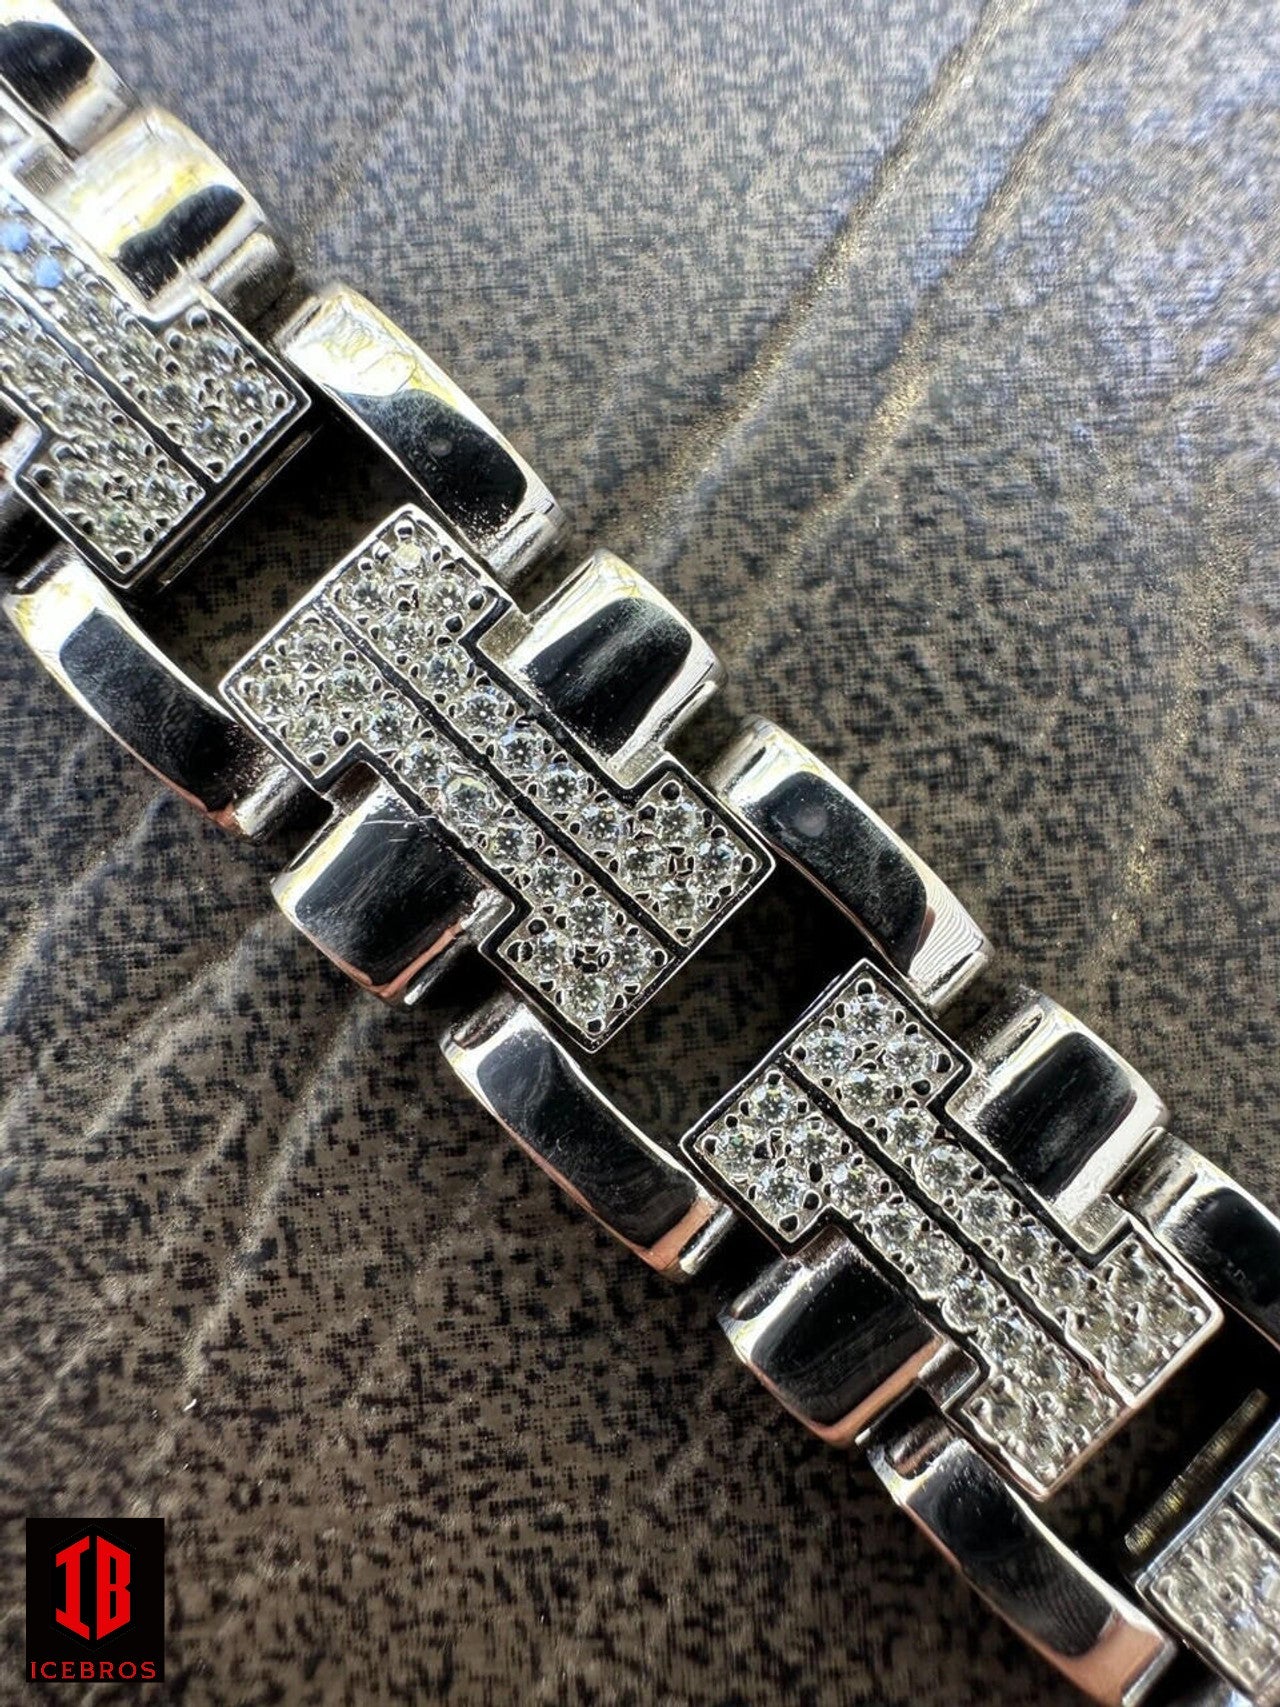 Men's 12mm H Link Bracelet Real Solid 14k Gold Over 925 Sterling Silver